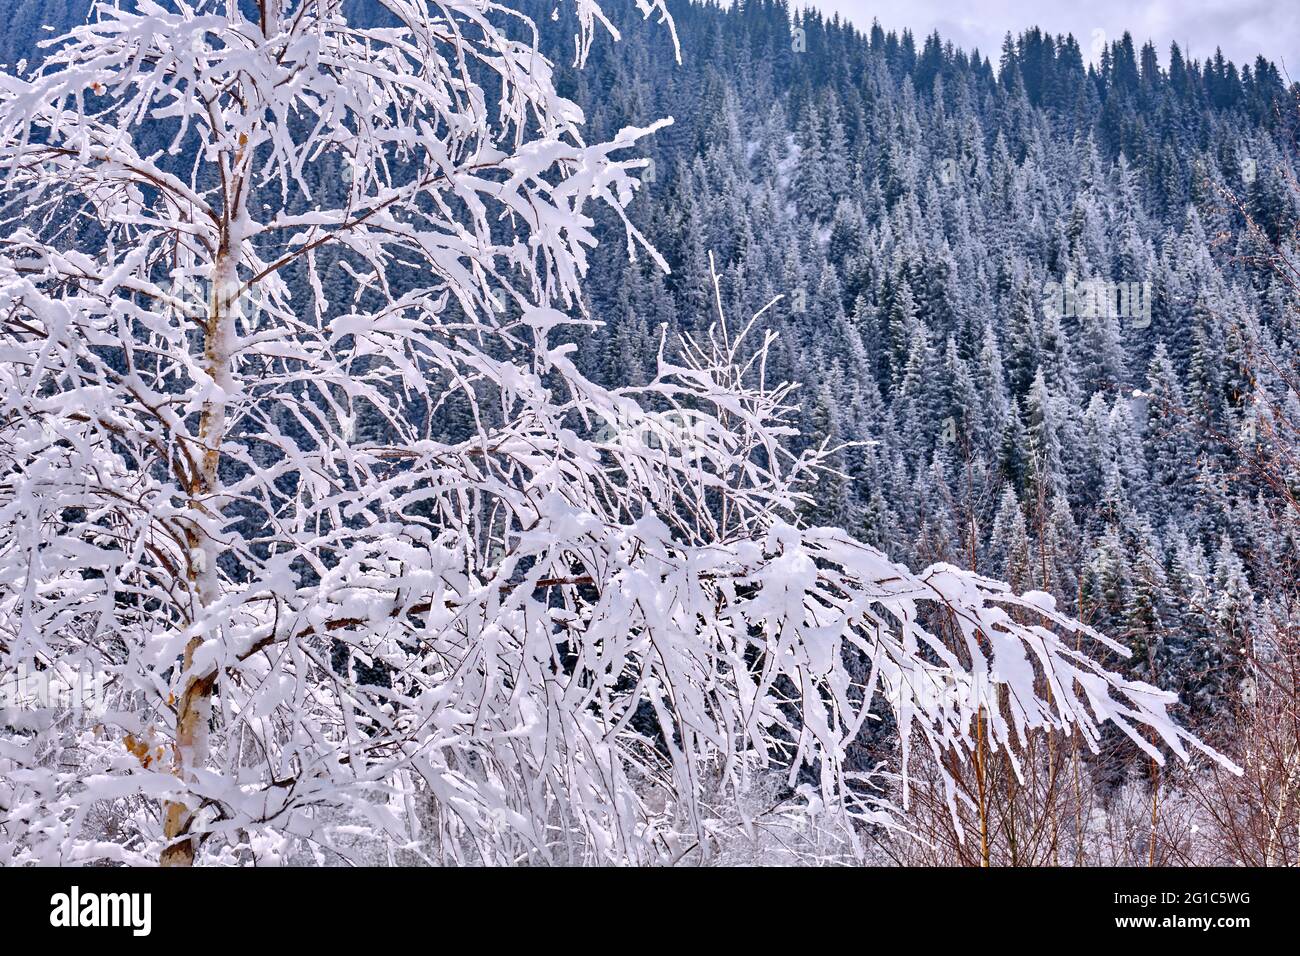 Un gel blanc matinal sur les branches d'un arbre dans les montagnes sur le fond de sapins enneigés; plantes gelées après une chute de neige de près Banque D'Images